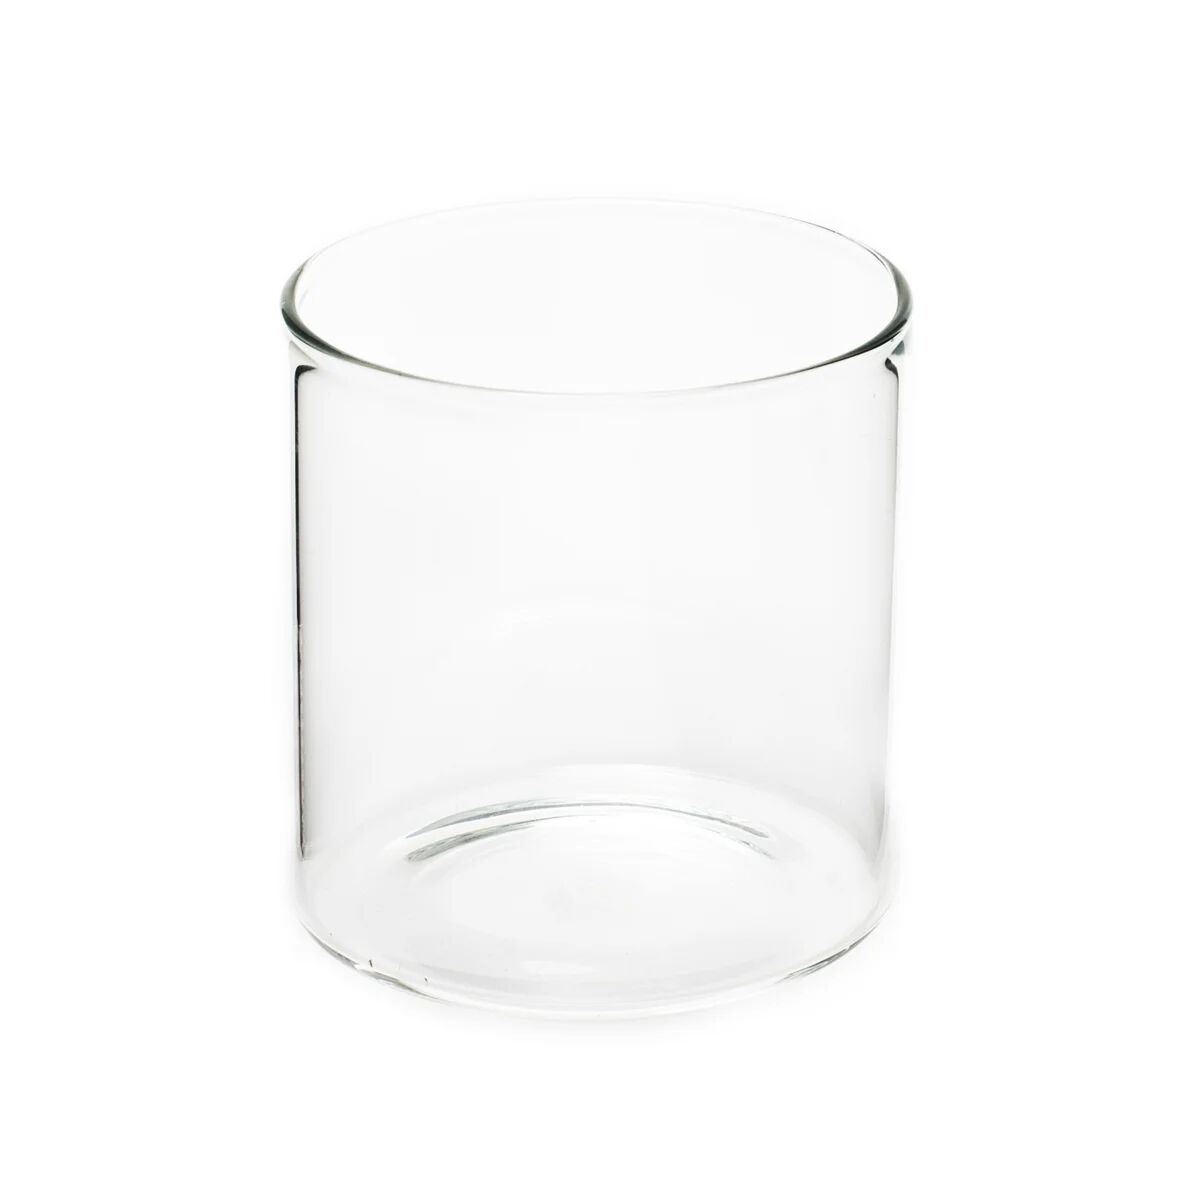 Ørskov glass small